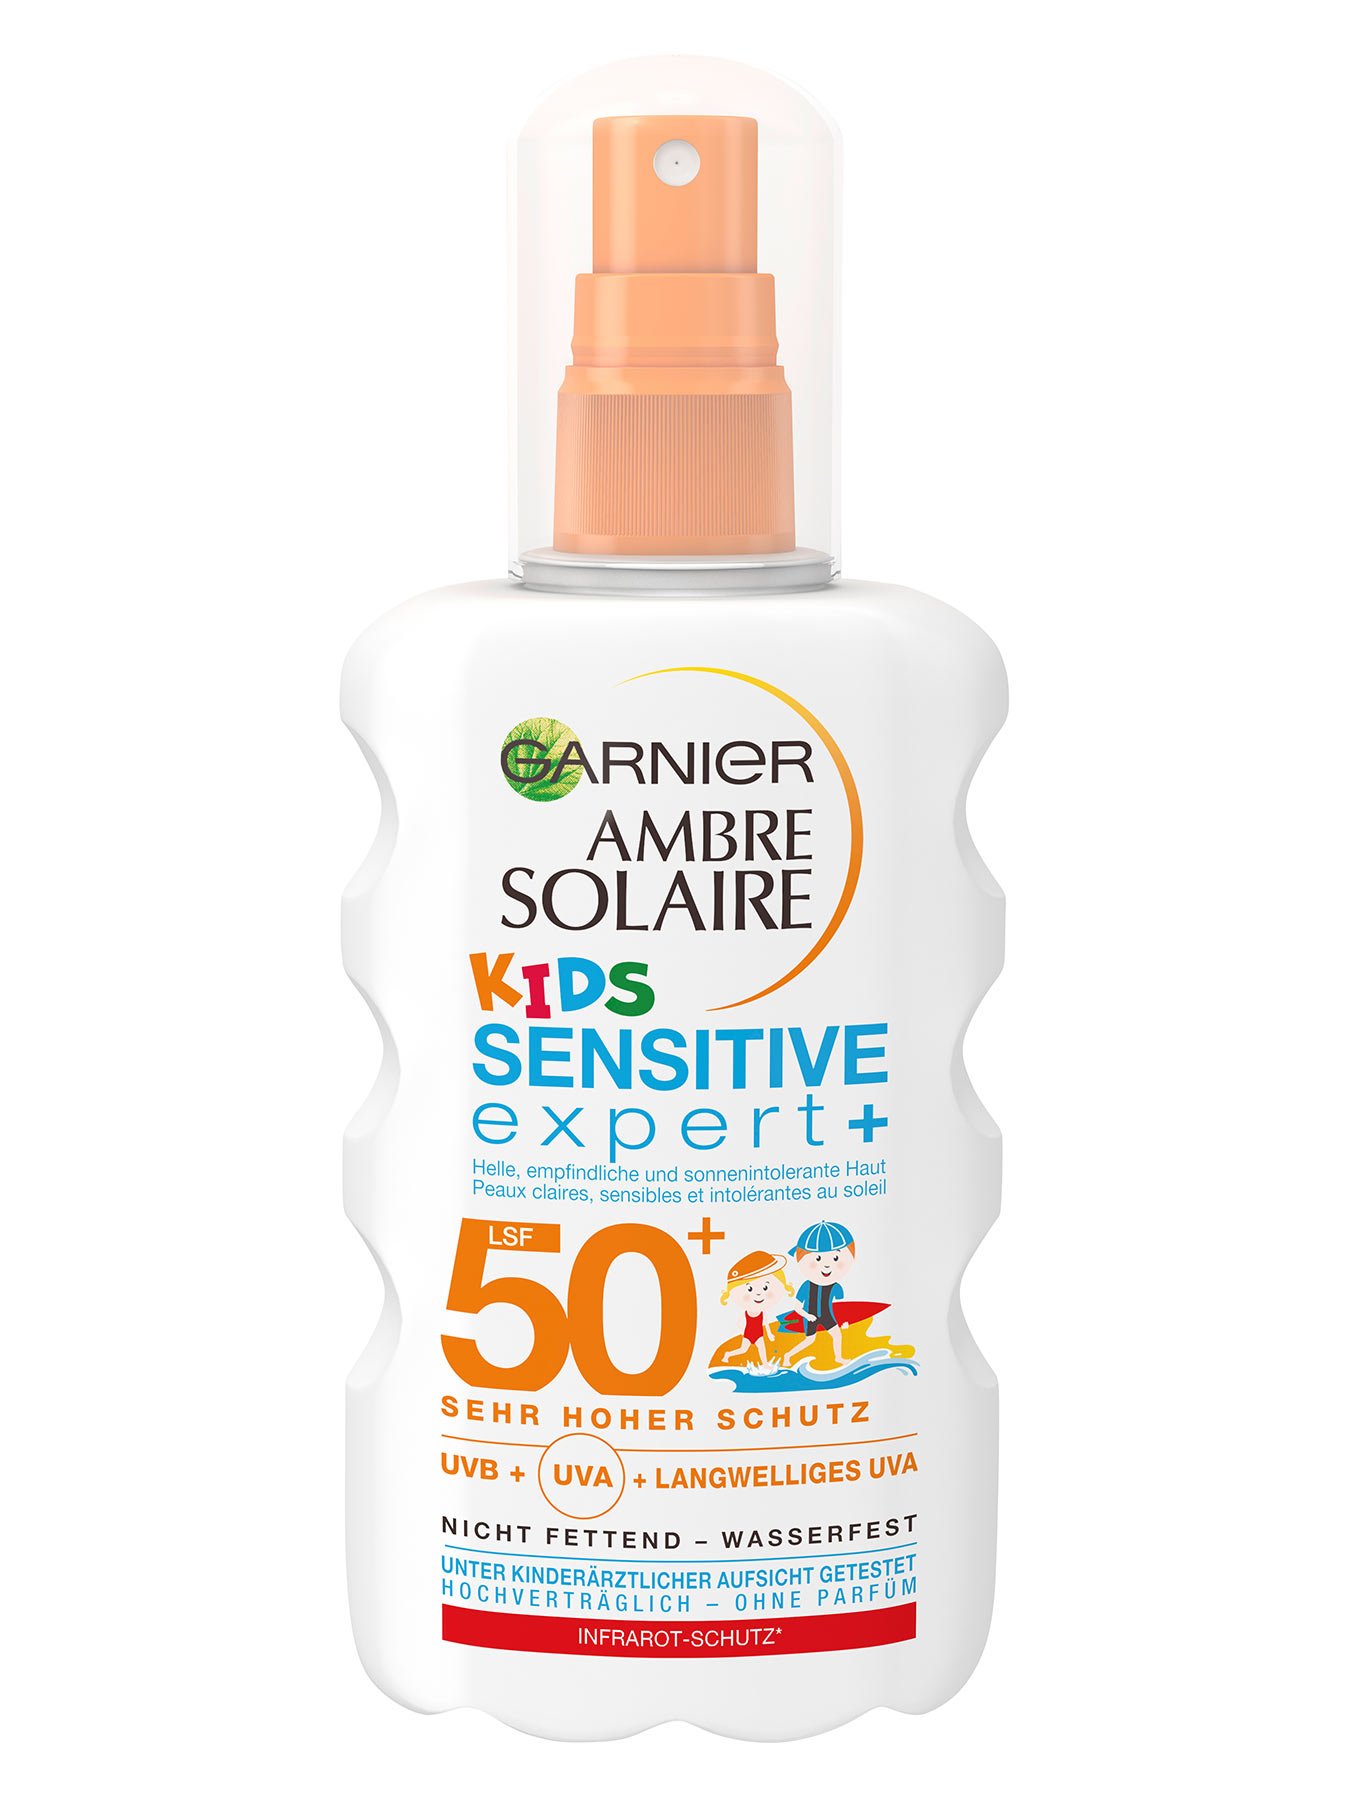 Spray-LSF-50-Ambre-Solaire-Kids-Sensitiv-Expert-Plus-200ml-Vorderseite-Garnier-Deutschland-gr